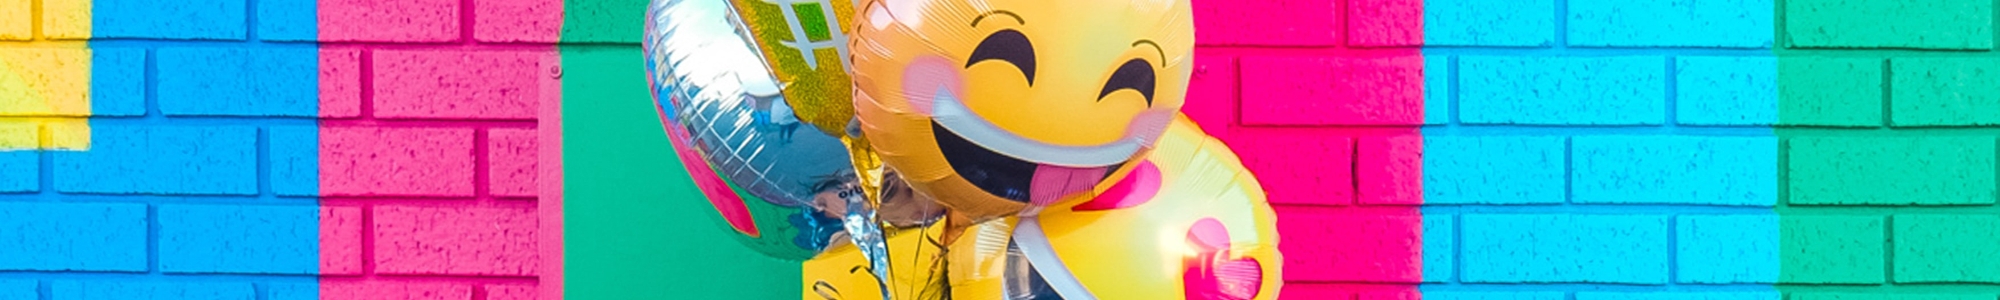 kinder jugend kompetenz jugend - Smiley Luftballons vor bunter Wand